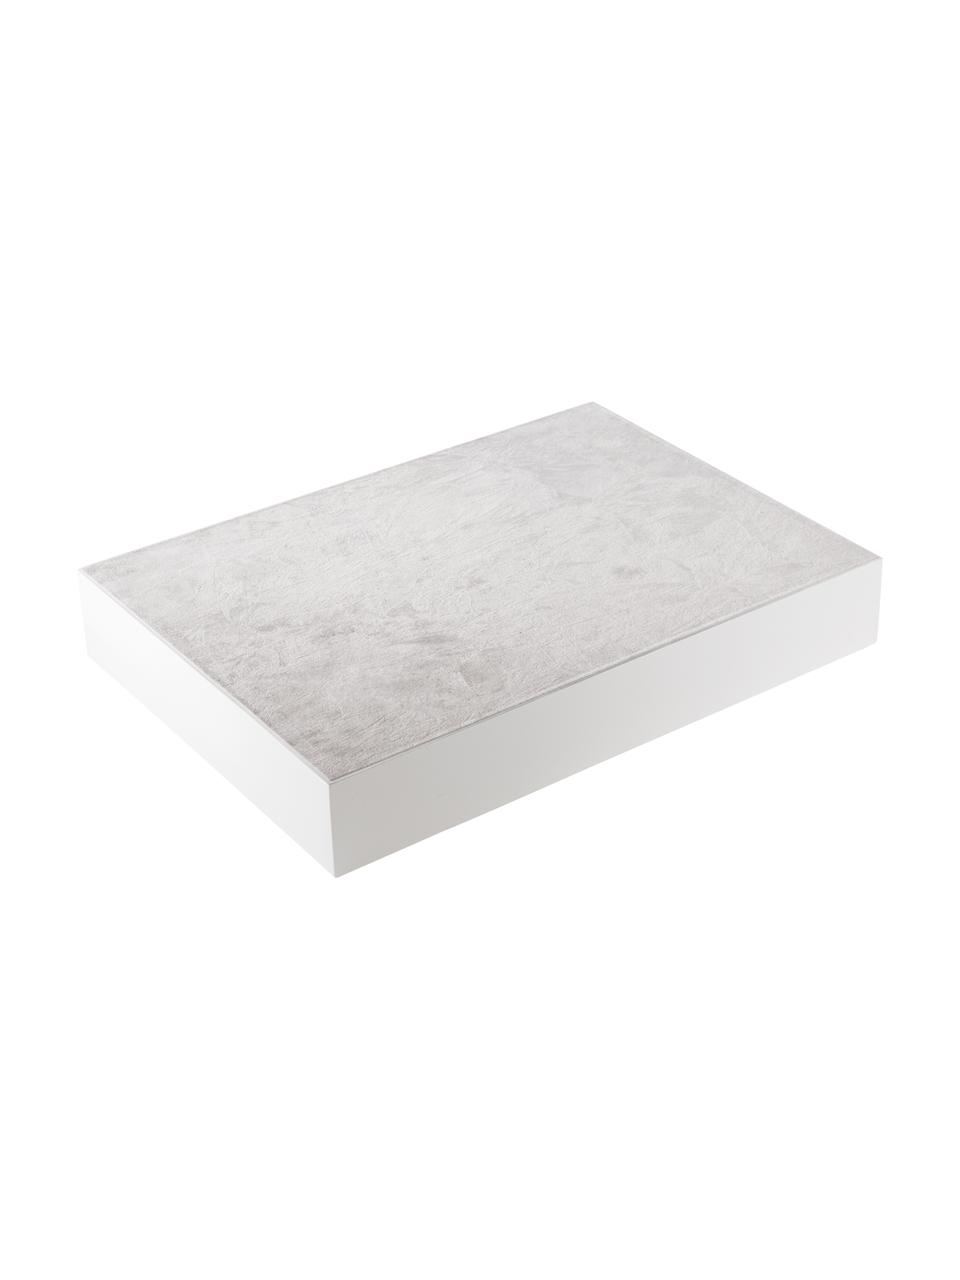 Hochglanz-Tablett Hayley in Weiß, Tablett: Mitteldichte Holzfaserpla, Unterseite: Samtbezug, Weiß, B 33 x T 24 cm